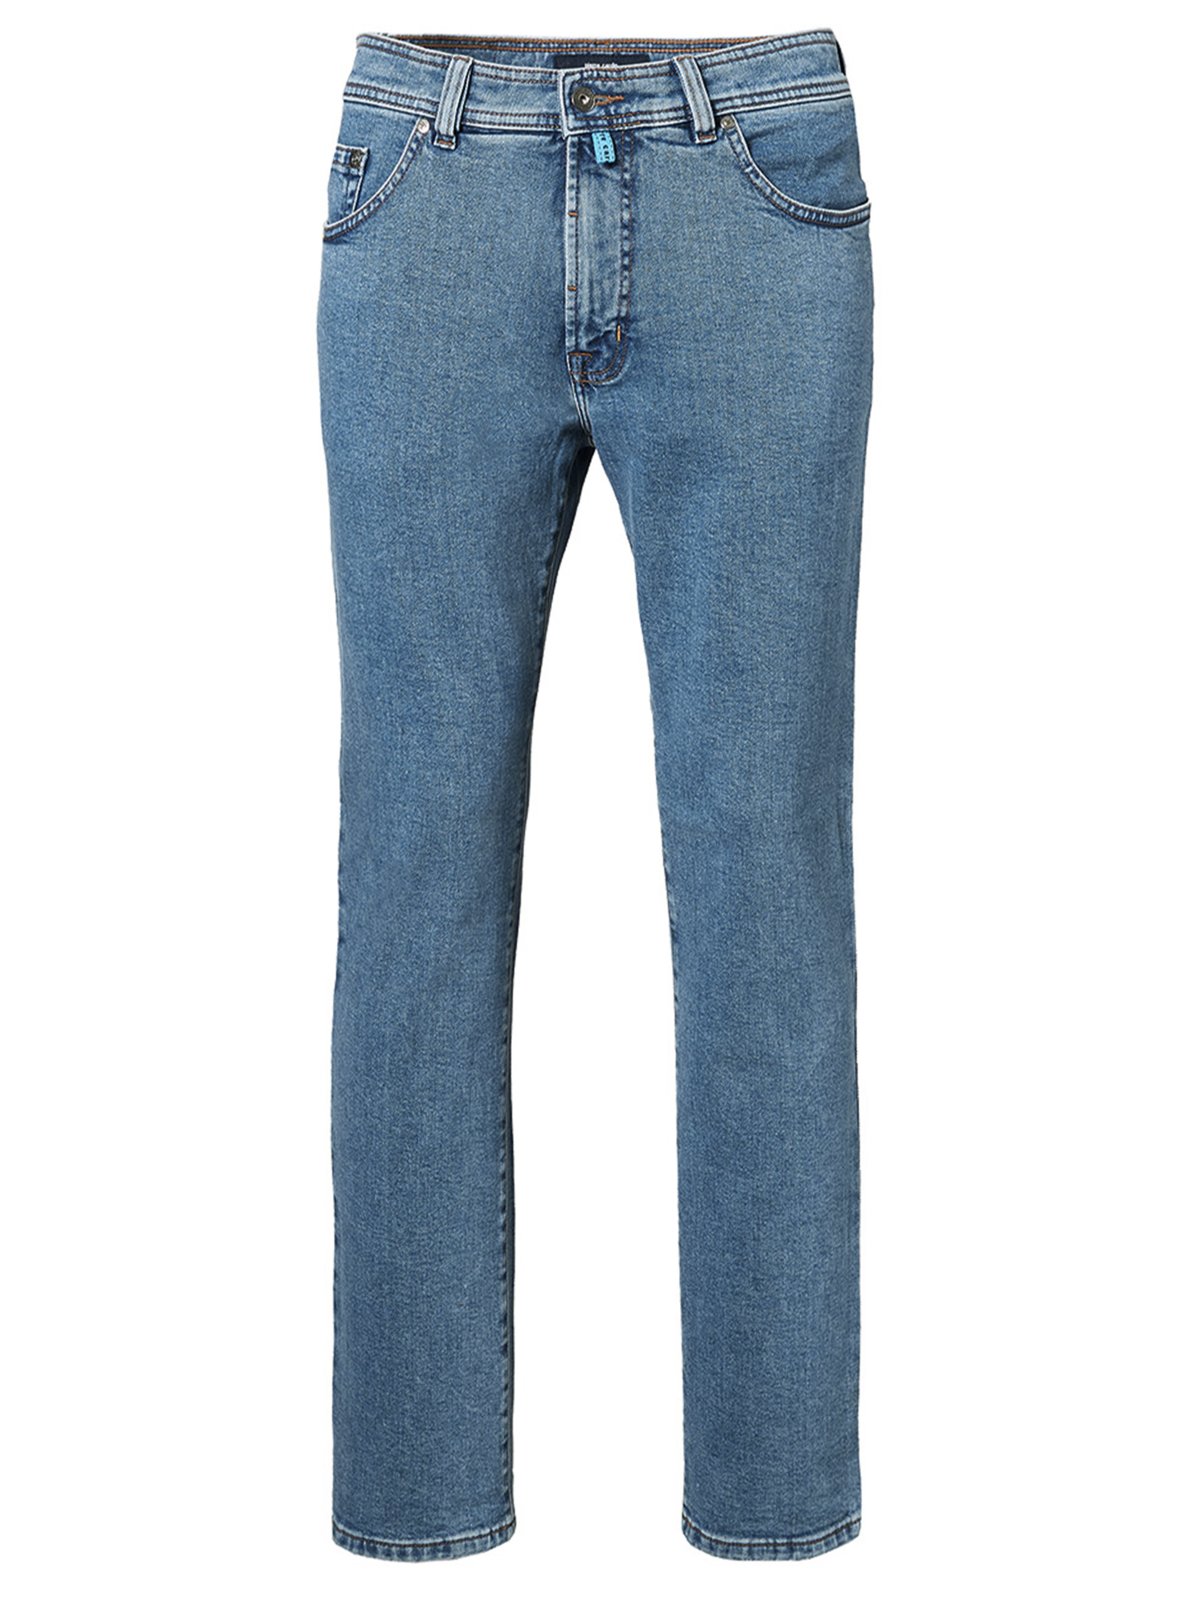 Pierre Cardin Jeans in dezentem Washed-Look, Futureflex